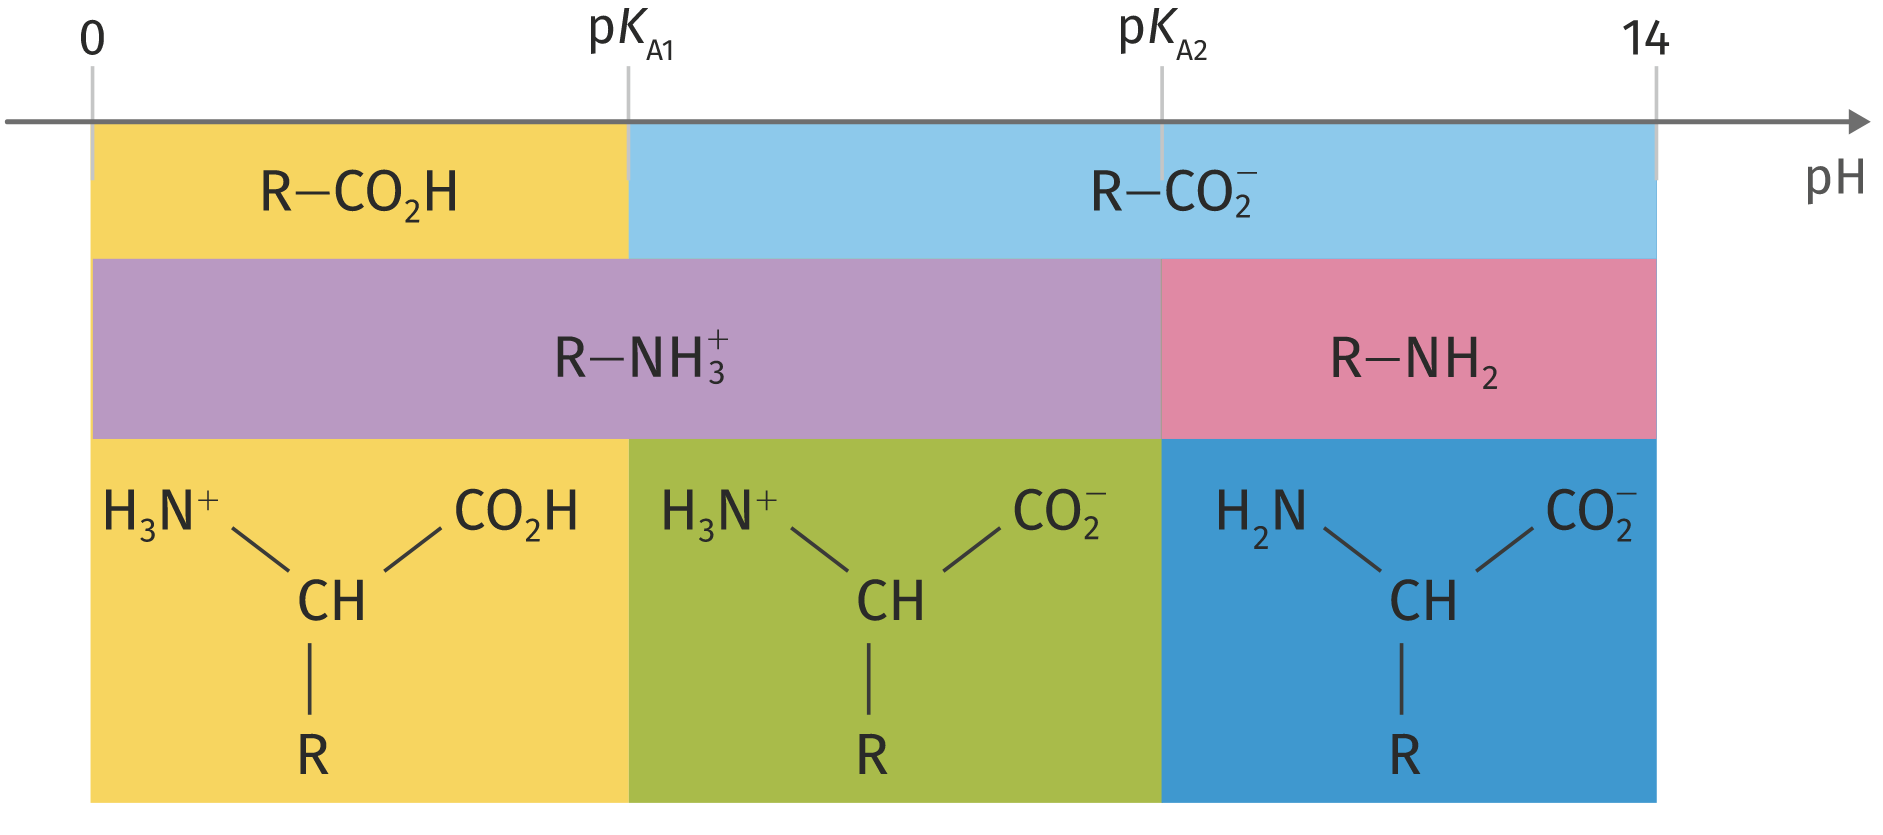 diagramme de prédominance acide α-aminé